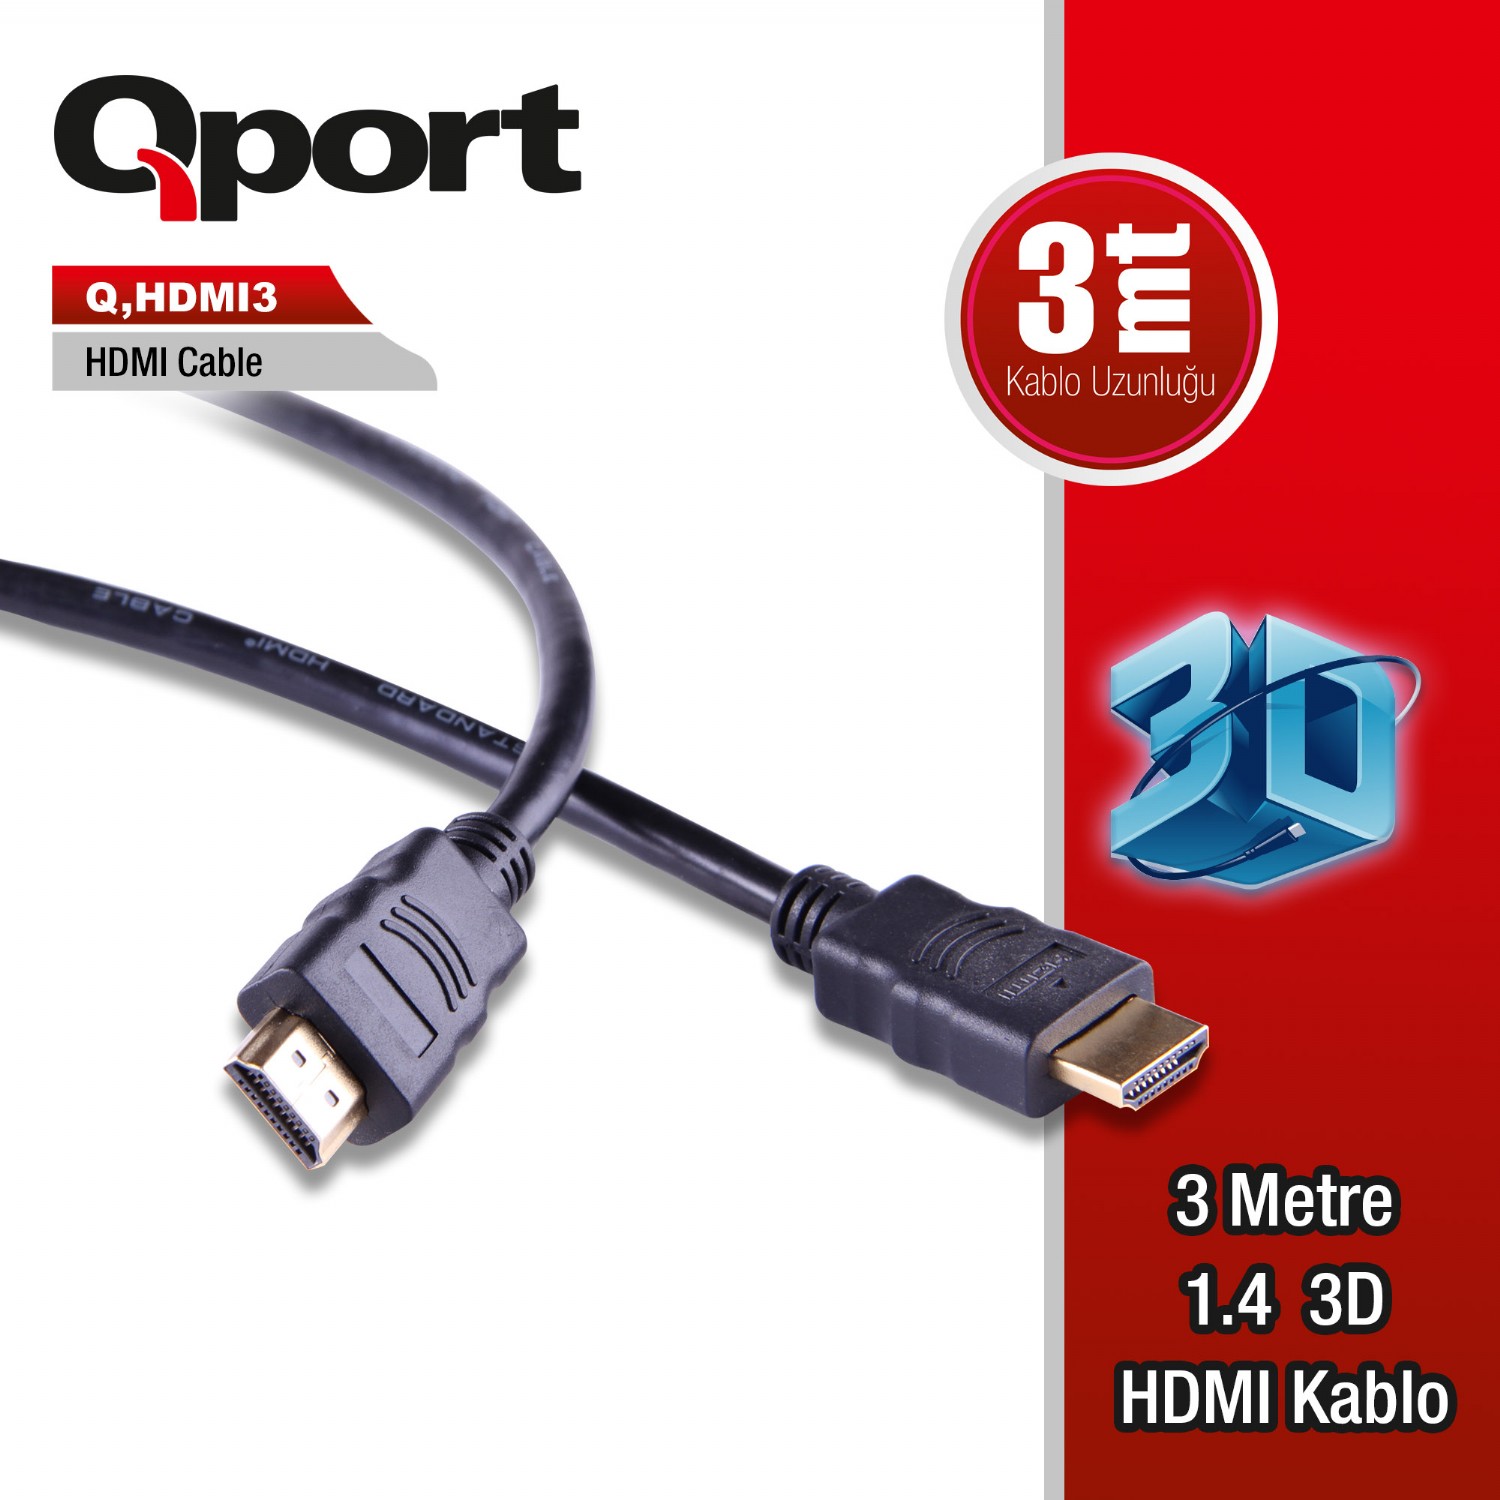 Q-HDMI3